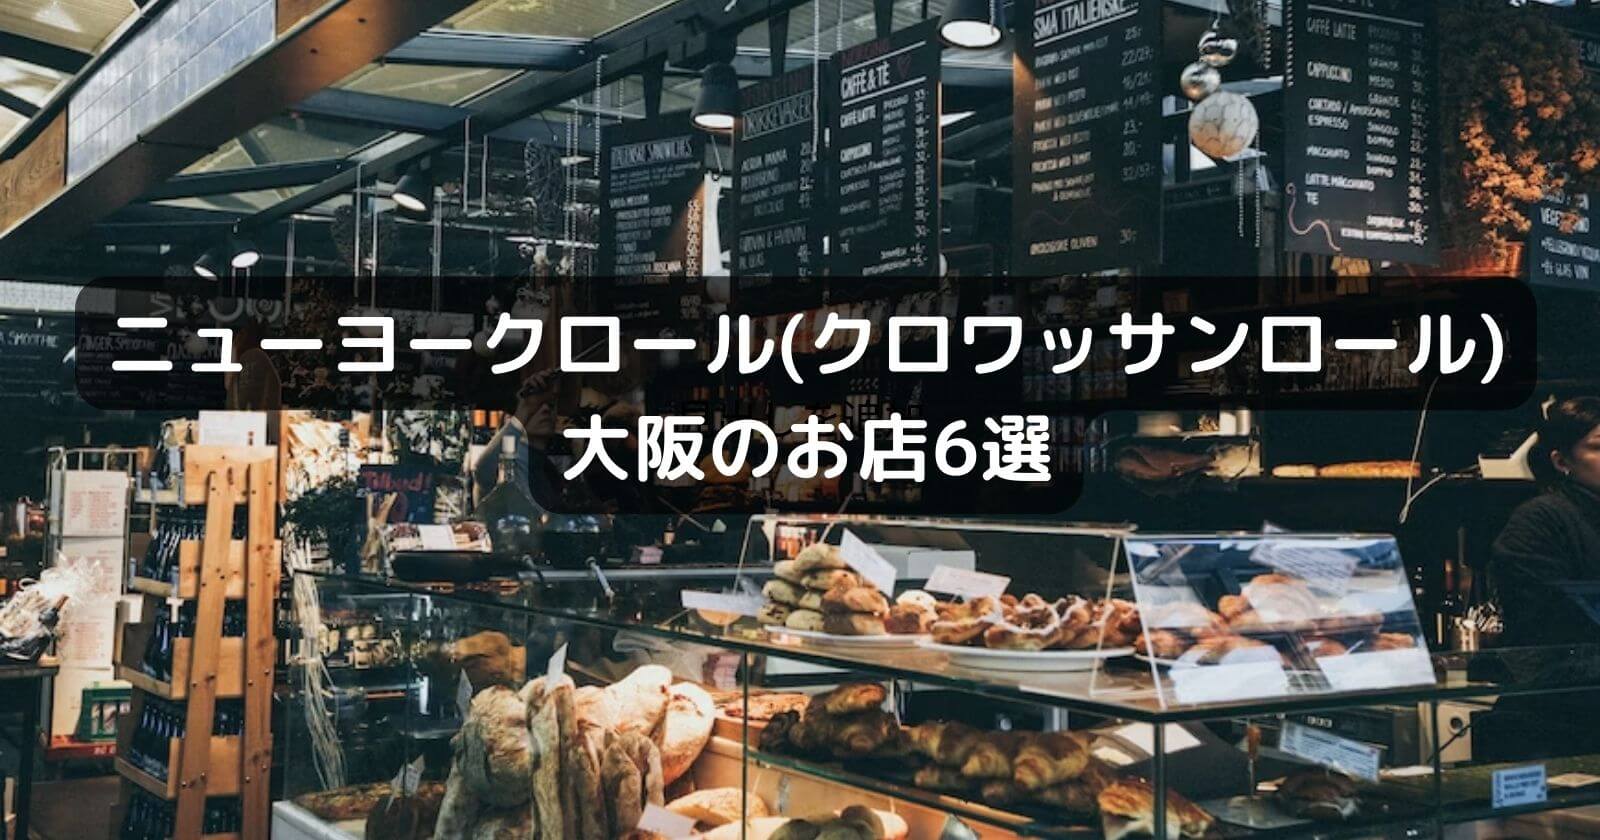 ニューヨークロール(シュプリームロール)が買える大阪のお店